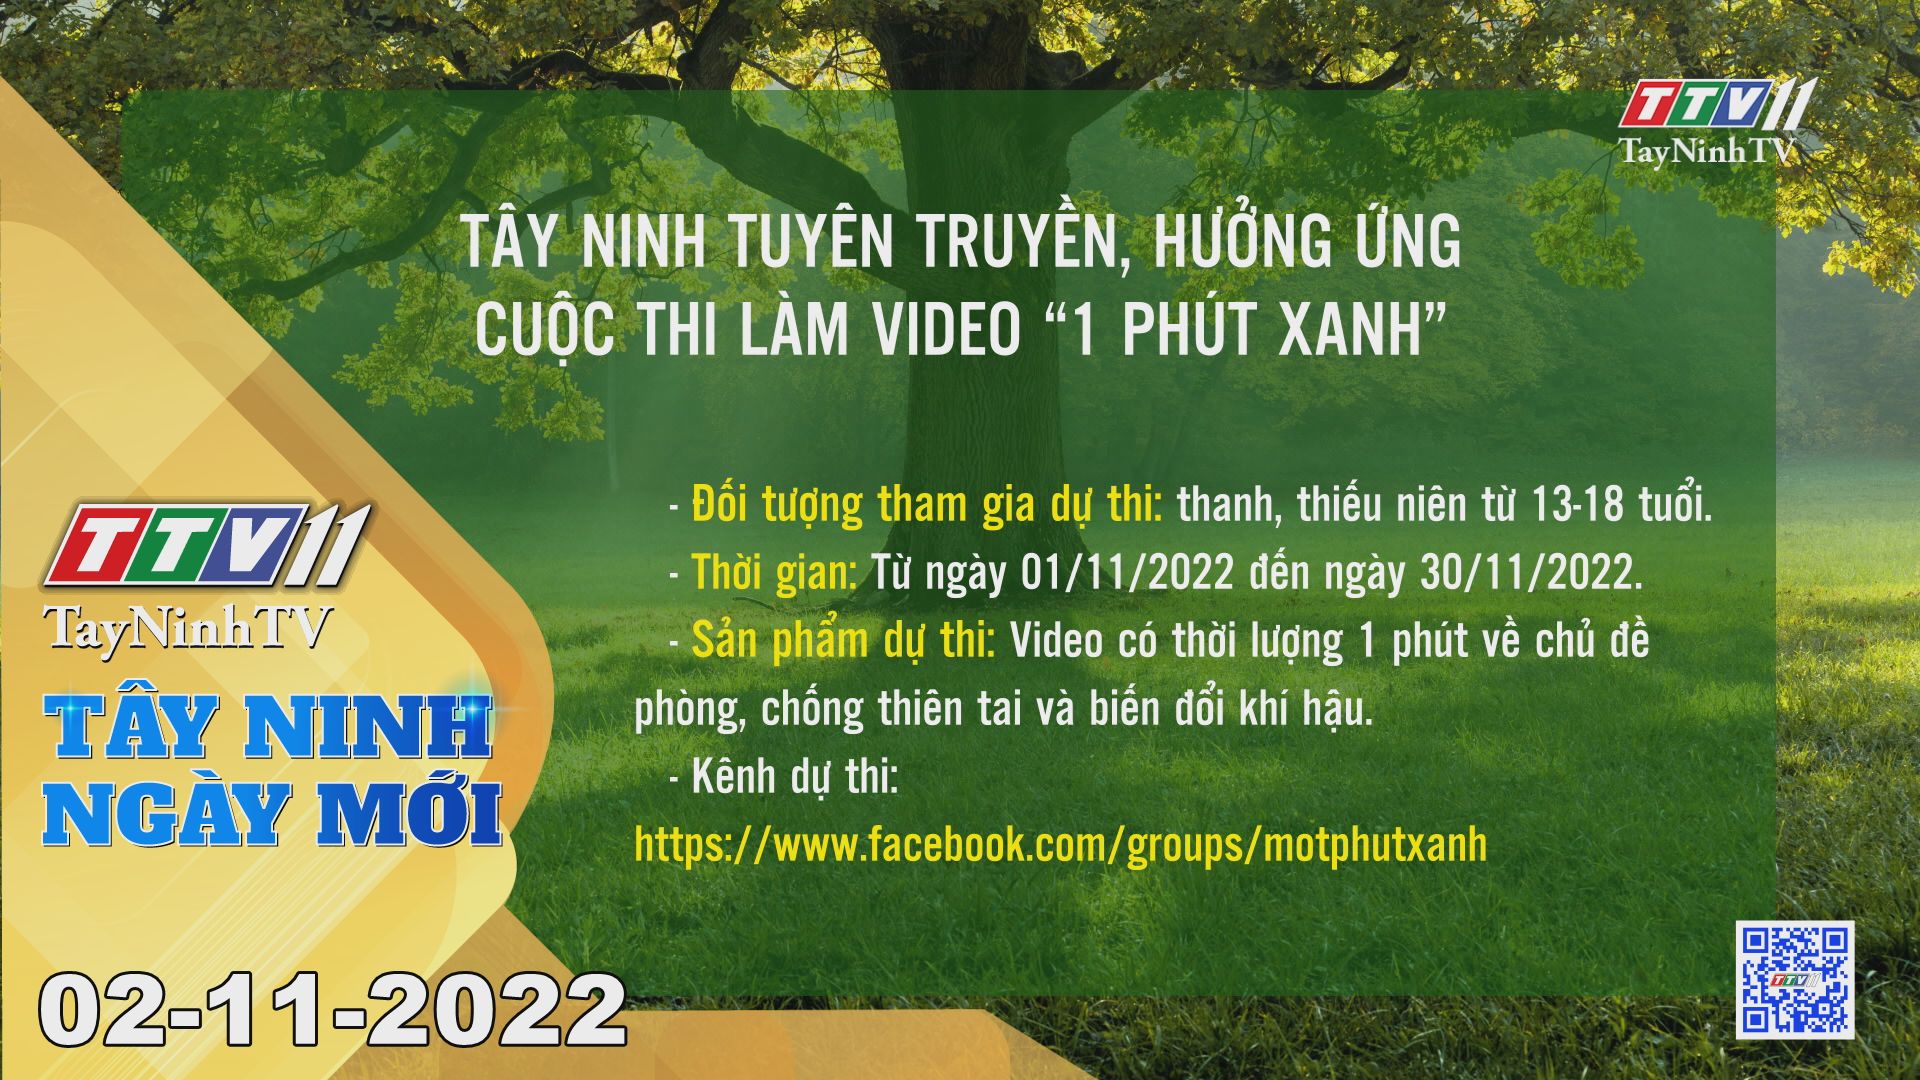 Tây Ninh ngày mới 02-11-2022 | Tin tức hôm nay | TayNinhTV